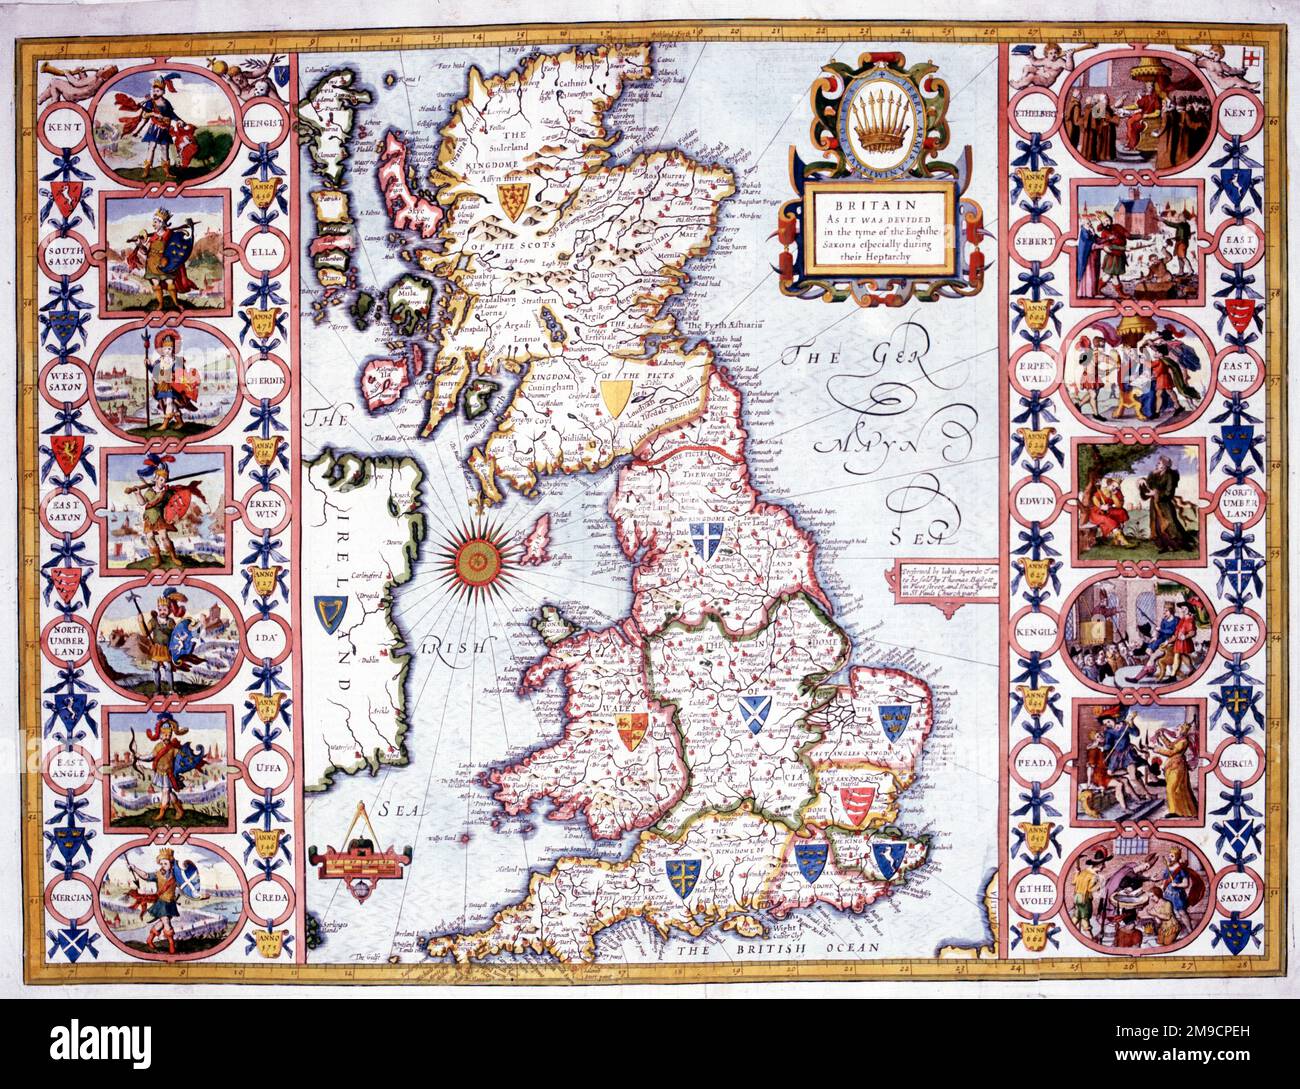 Mappa della Gran Bretagna e dell'Etarchia anglosassone - Divisione dei Regni Foto Stock